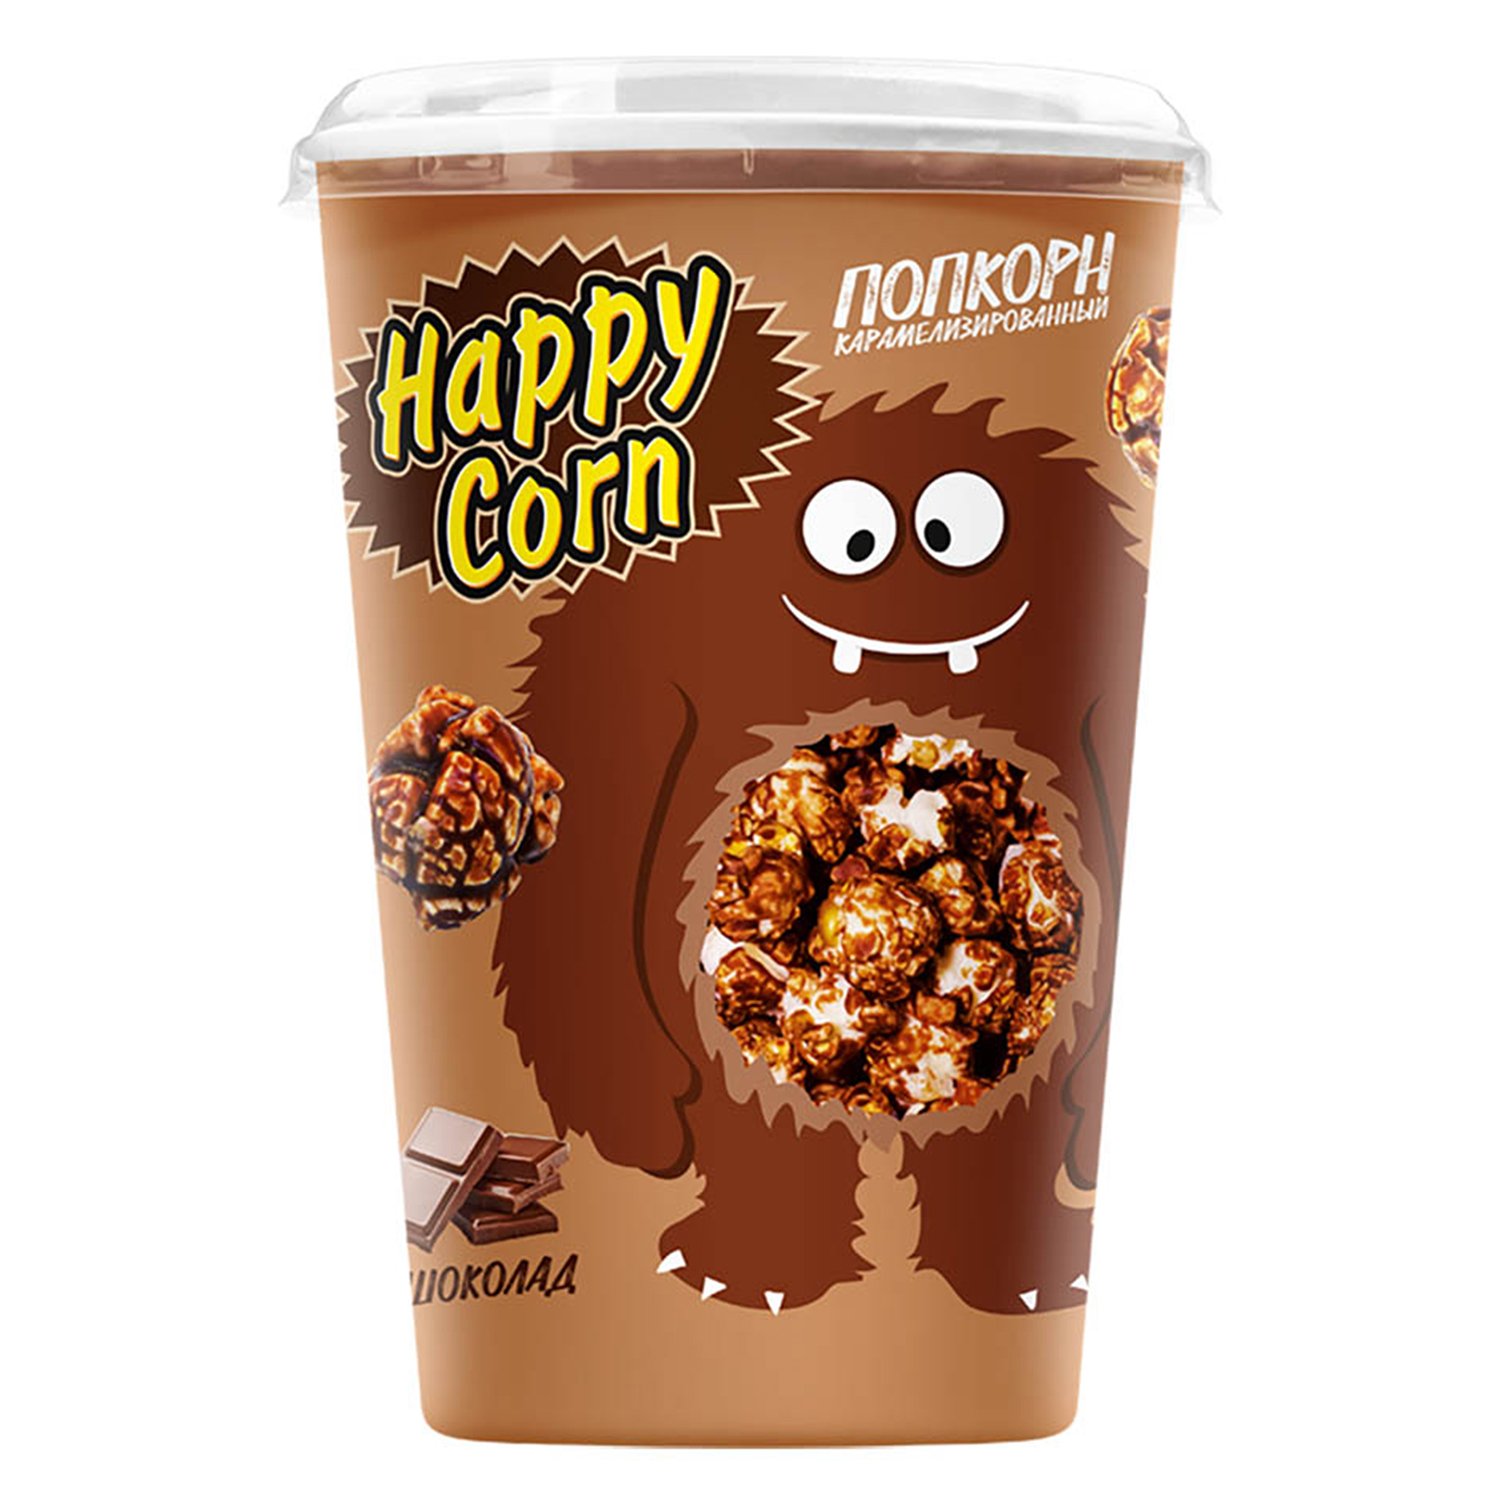 Happy corn. Воздушная кукуруза Happy Corn. Попкорн Хэппи Корн. Воздушная кукуруза "Happy Corn" с солью. Попкорн в шоколаде Corn.